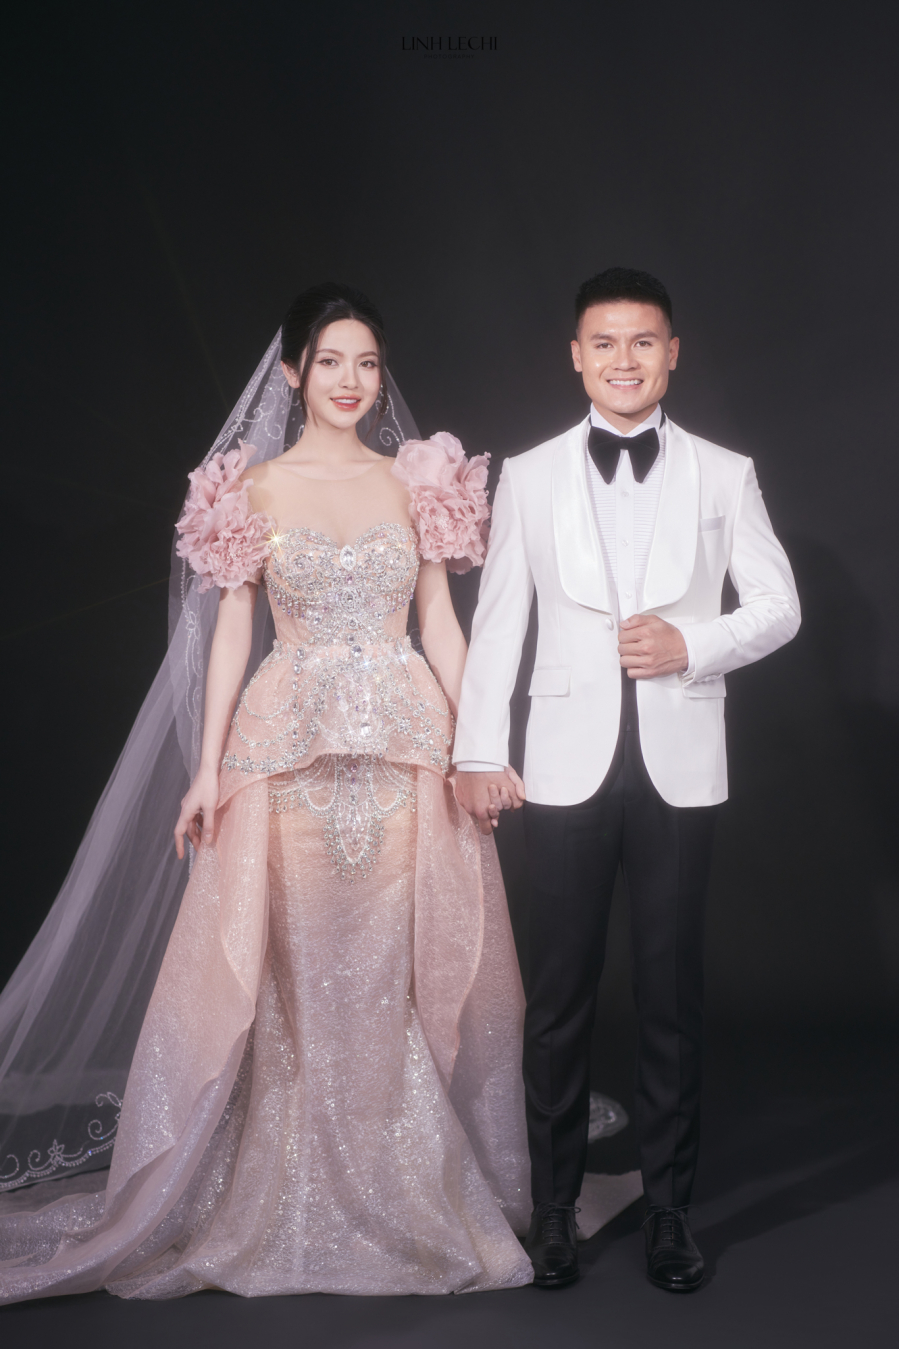 Váy hồng dành cho cô dâu Chu Thanh Huyền style huyền bí của thời trang Á Đông đậm chất thơ với cảm hứng bất tận của những cánh hoa để tôn vinh vẻ đẹp mỏng manh.